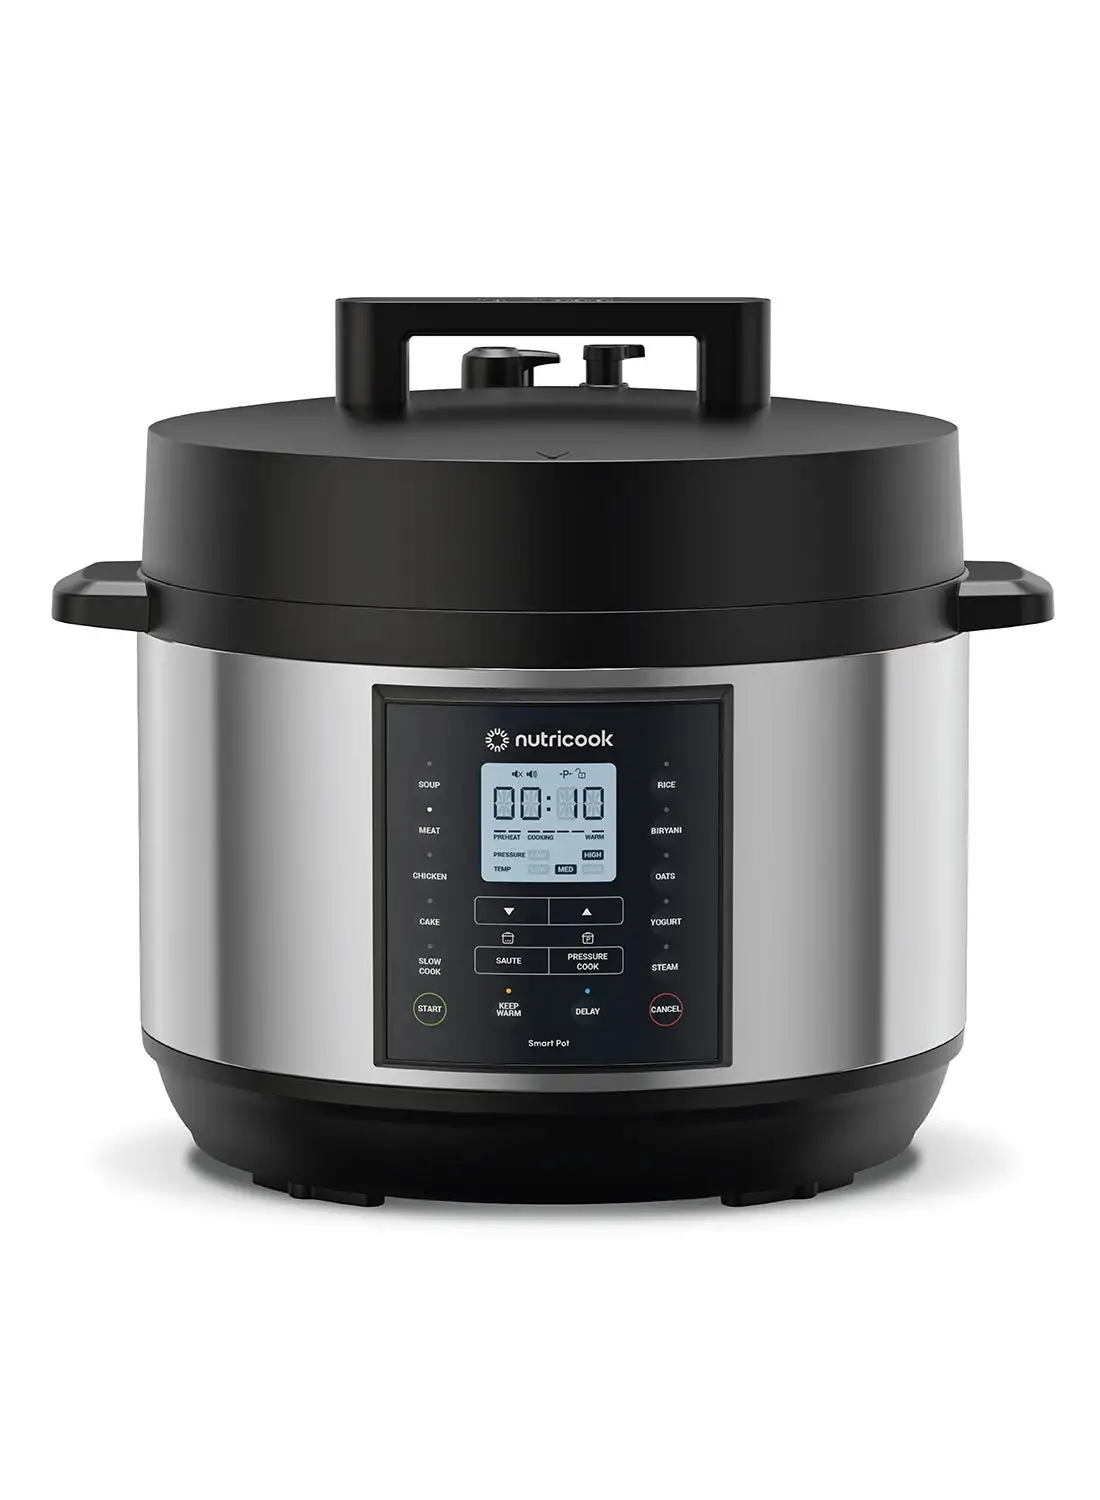 nutricook Smart Pot 2 Plus 9 Appliances in 1 Pressure Cooker Slow Cooker Rice Cooker Steamer Sauté Pot Yogurt Maker Soup Maker Cake Maker and Food Warmer 9.5 L 1500 W SP210L Silver/ Black